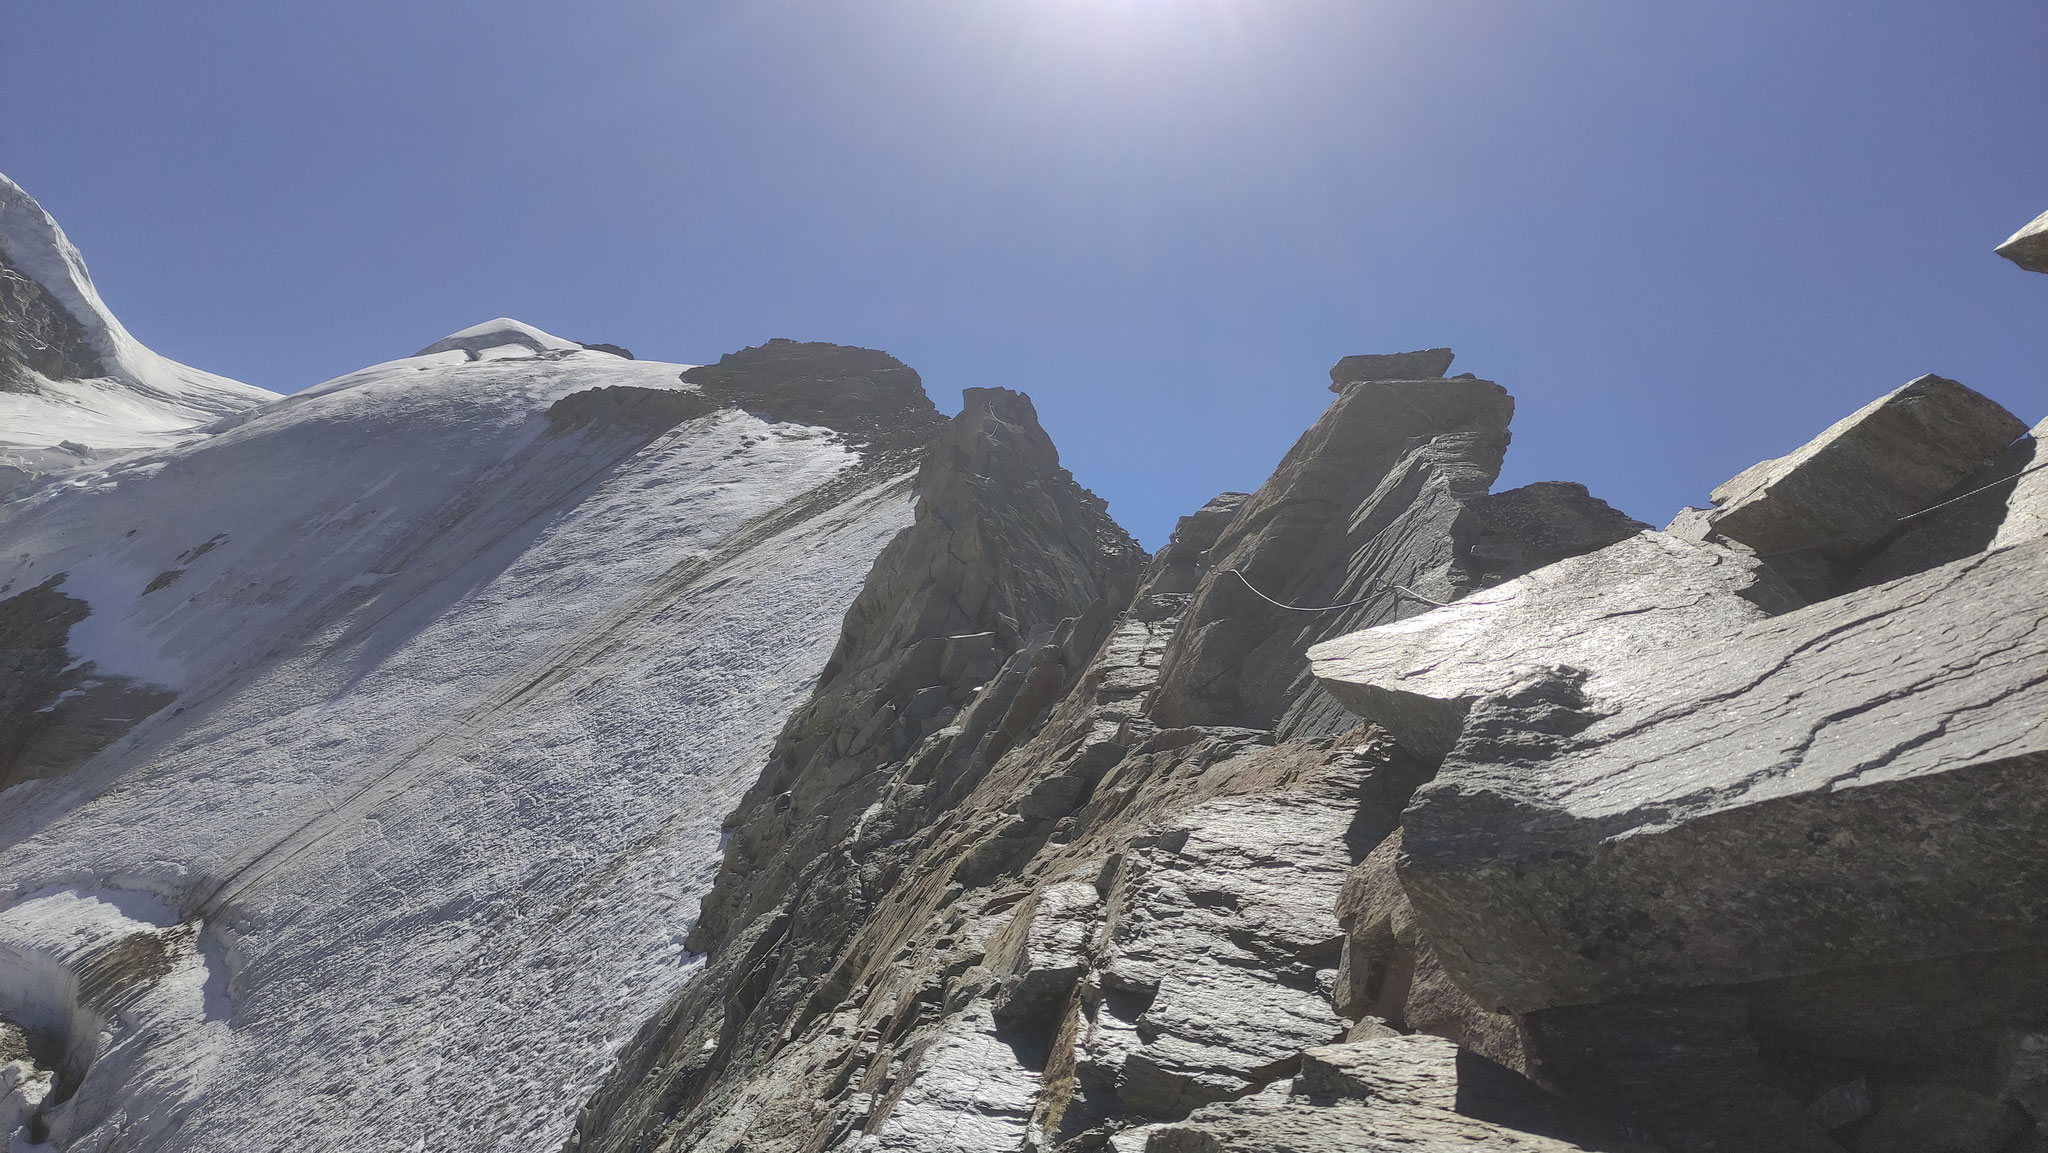 Der Klettersteig führt direkt am Grat entlang. Über den spaltenreichen Gletscher links darunter kommt der Normalweg hinauf